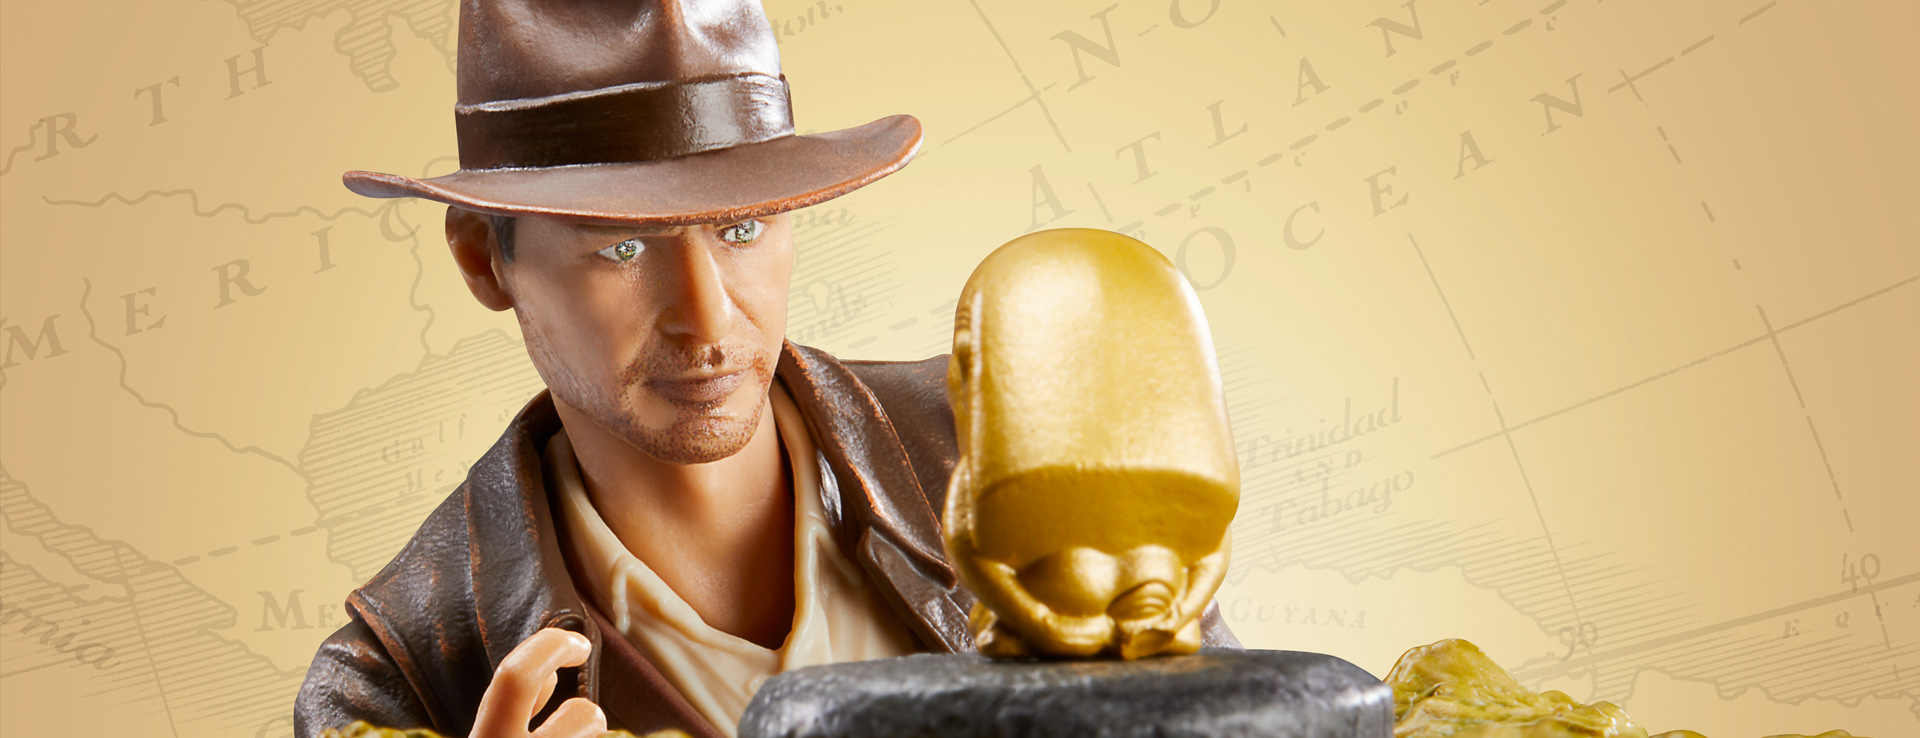 SWCE 2023: Indiana Jones Action Figure Reveals from Hasbro